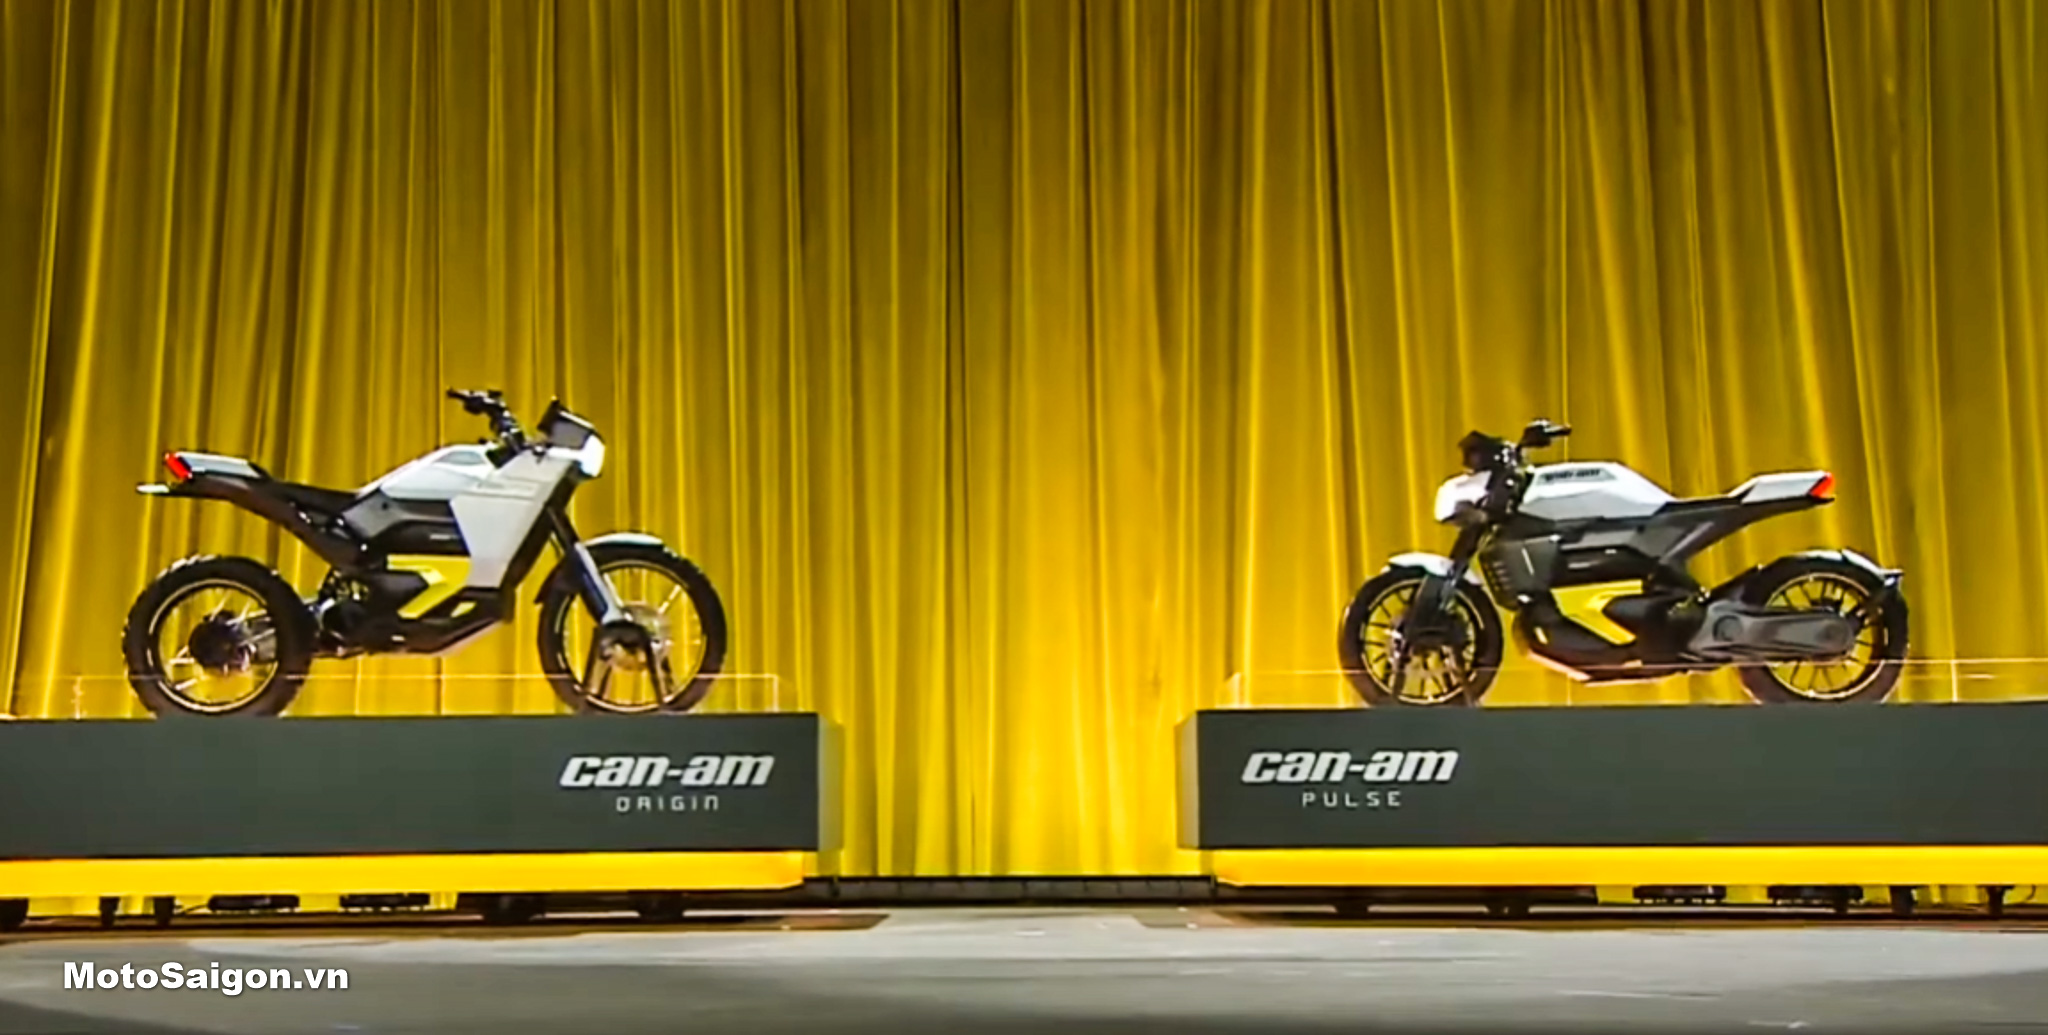 Can-Am ra mắt 2 mẫu xe mô tô điện Origin địa hình & Pulse đường phố